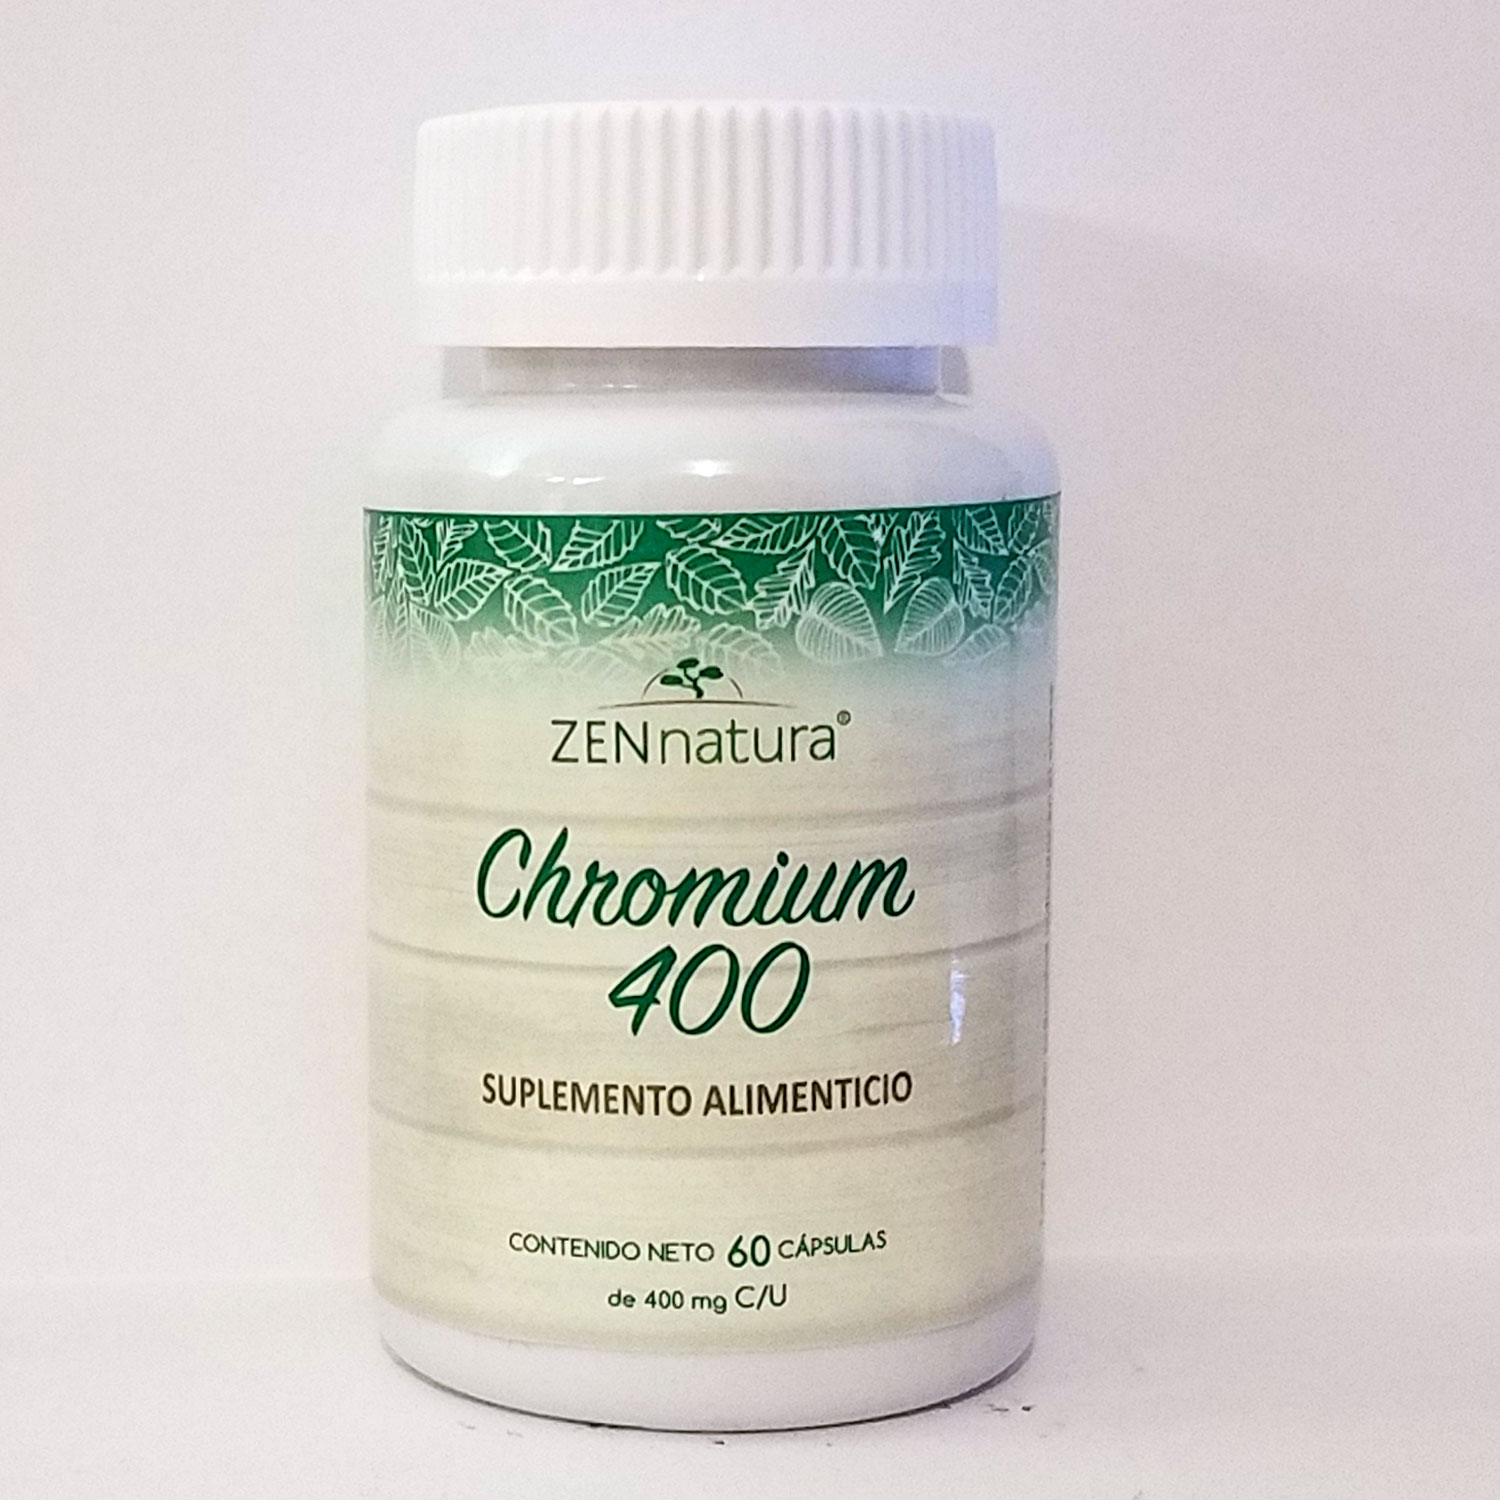 chromium polynicotinate supplement